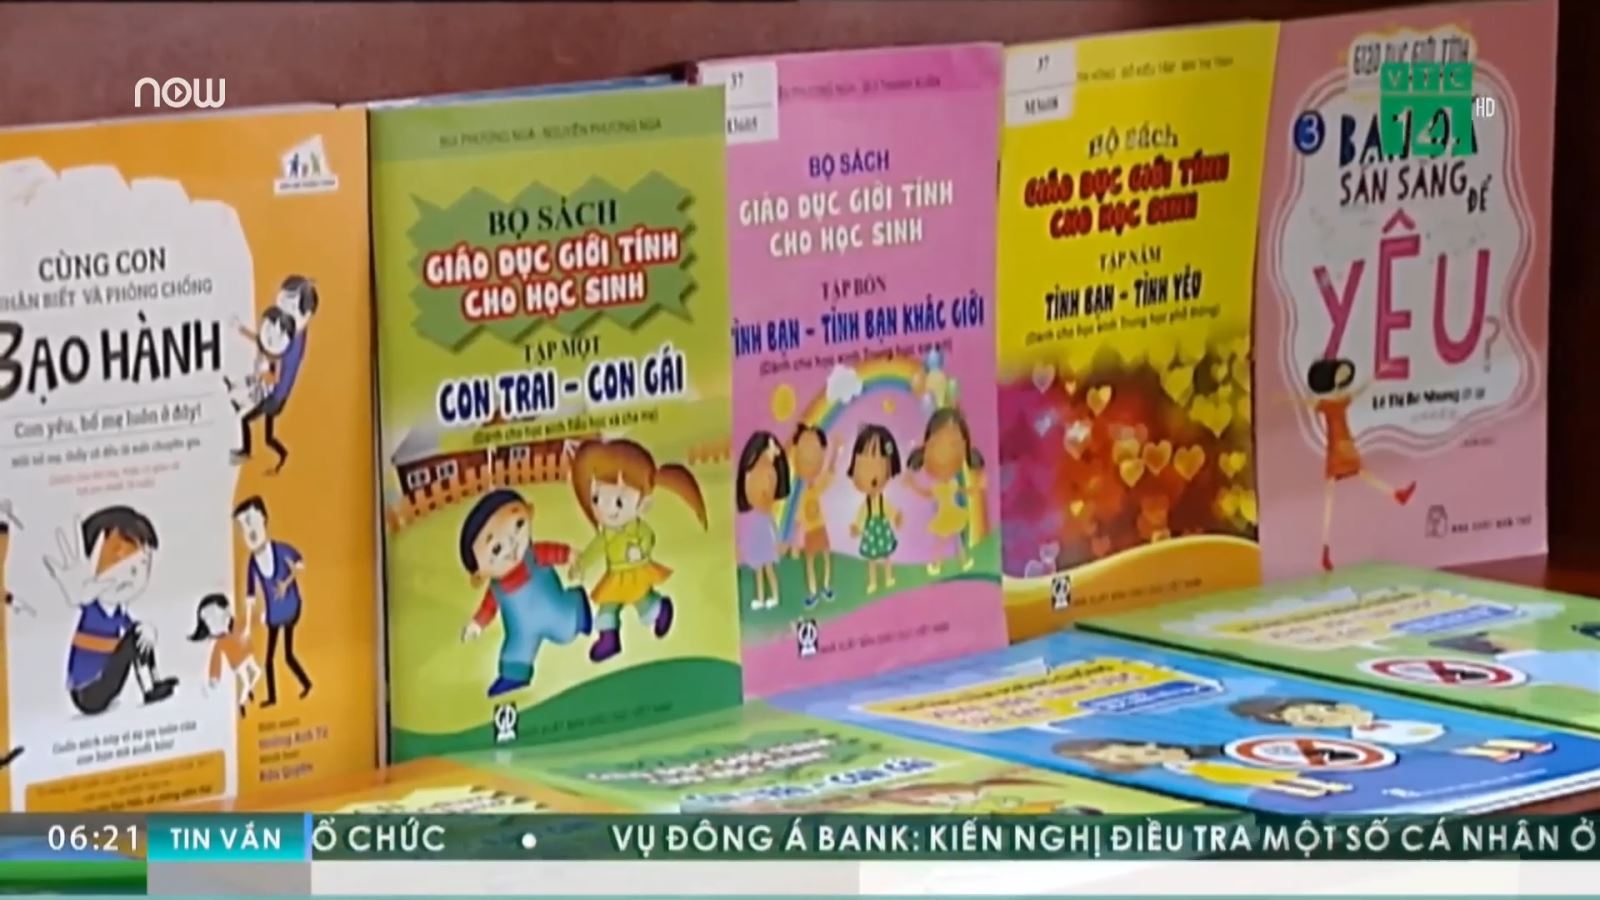 Giới thiệu sách về giáo dục giới tính và phòng chống xâm hại tình dục trẻ em